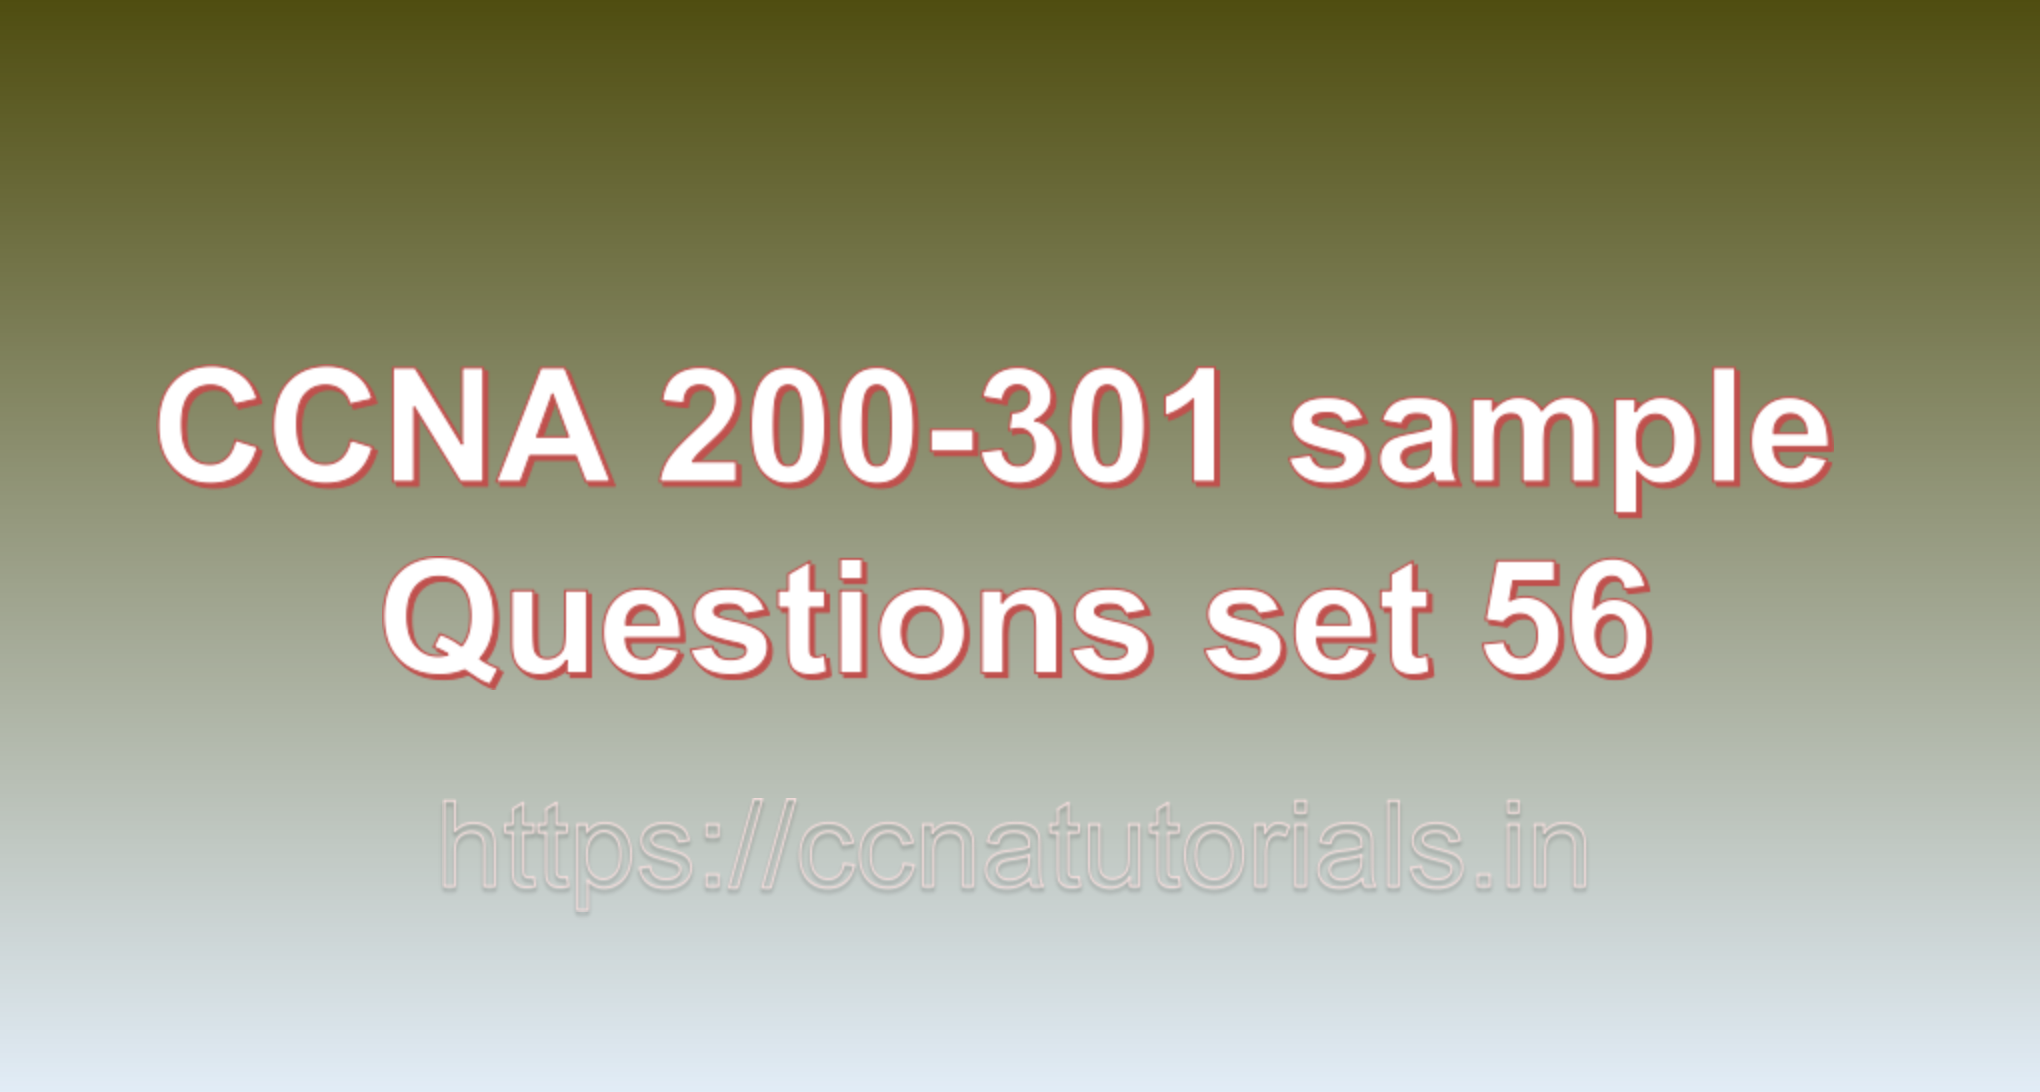 ccna sample questions set 56, ccna tutorials, CCNA Exam, ccna